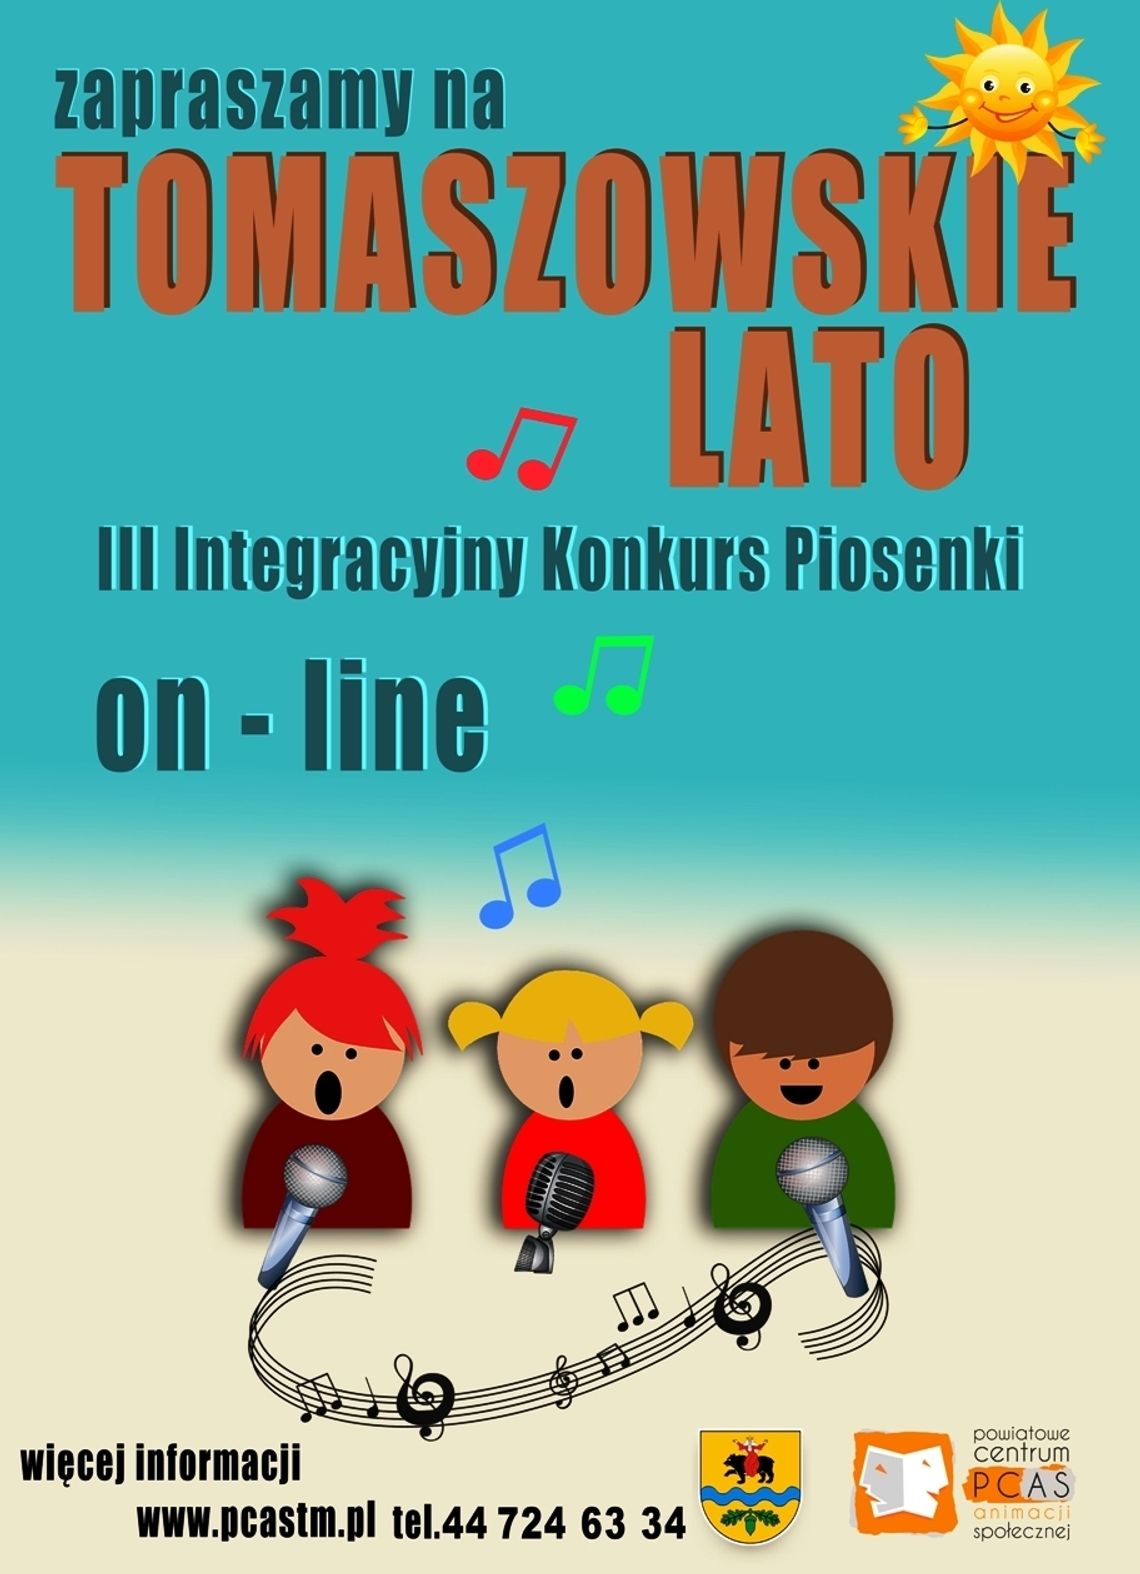 Tomaszowskie Lato on line